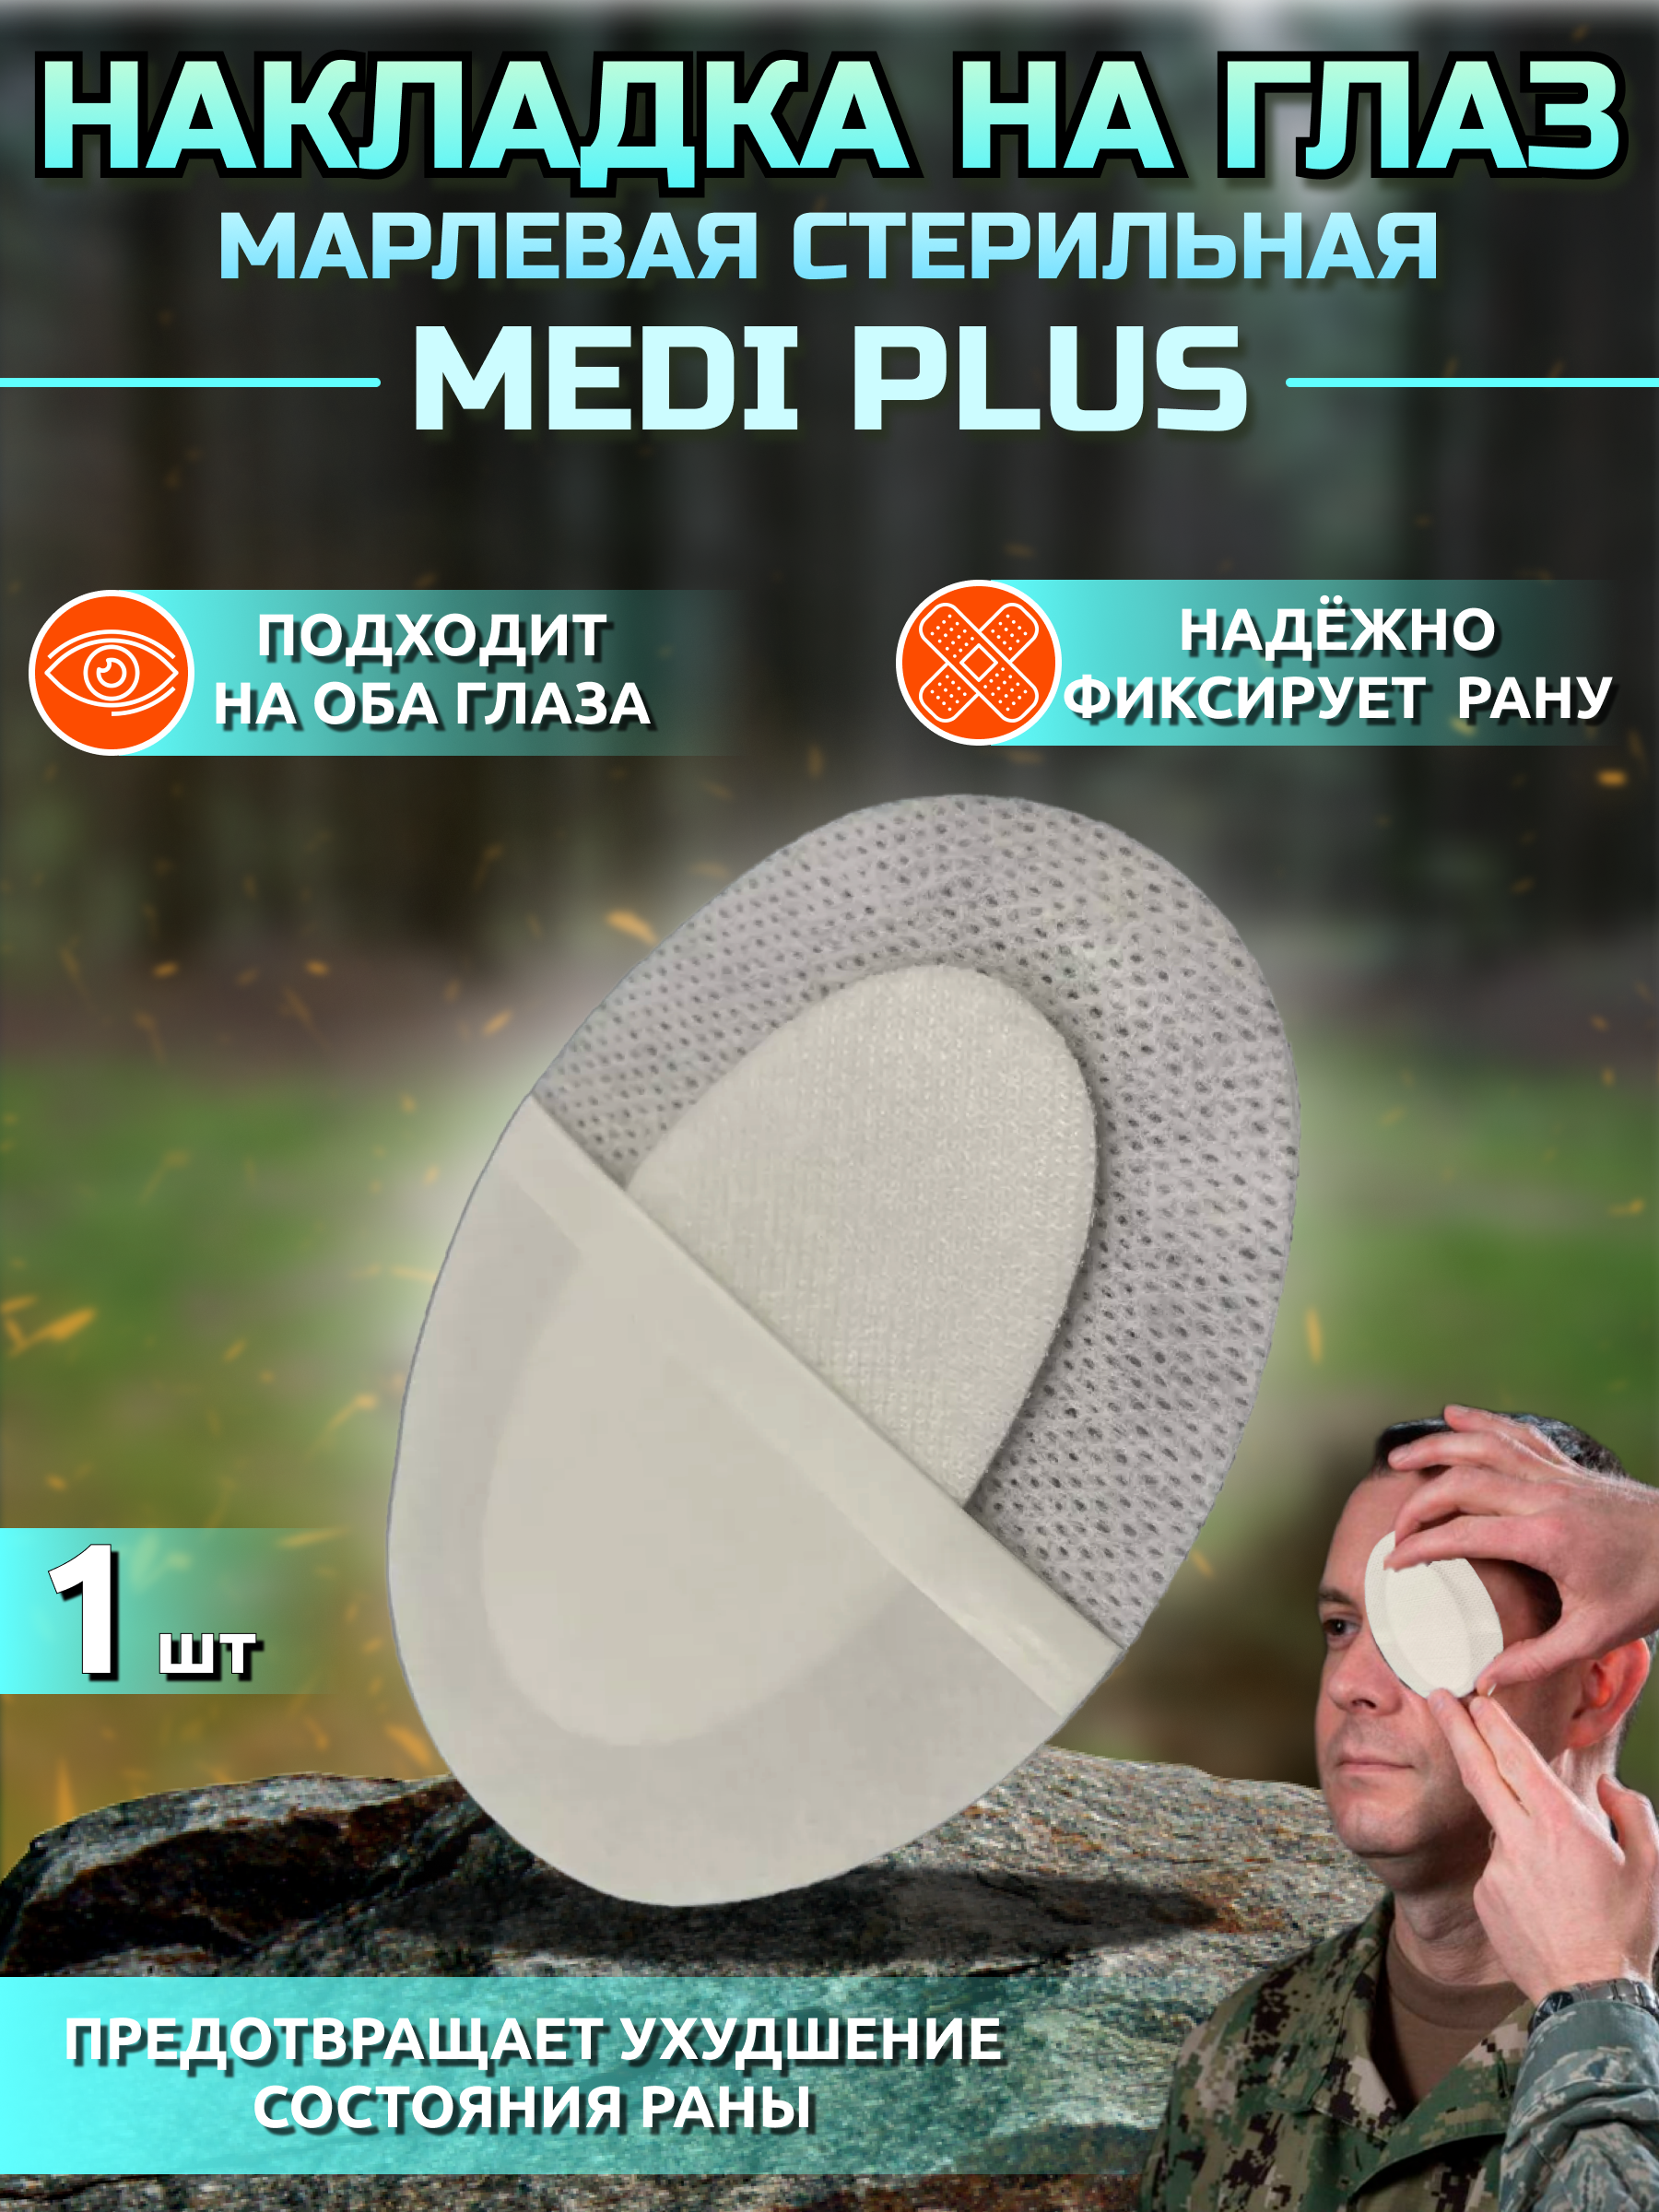 Medi plus марлевая гипоаллергенная стерильная медицинская накладка на глаз при травмах и ранениях- 1 шт